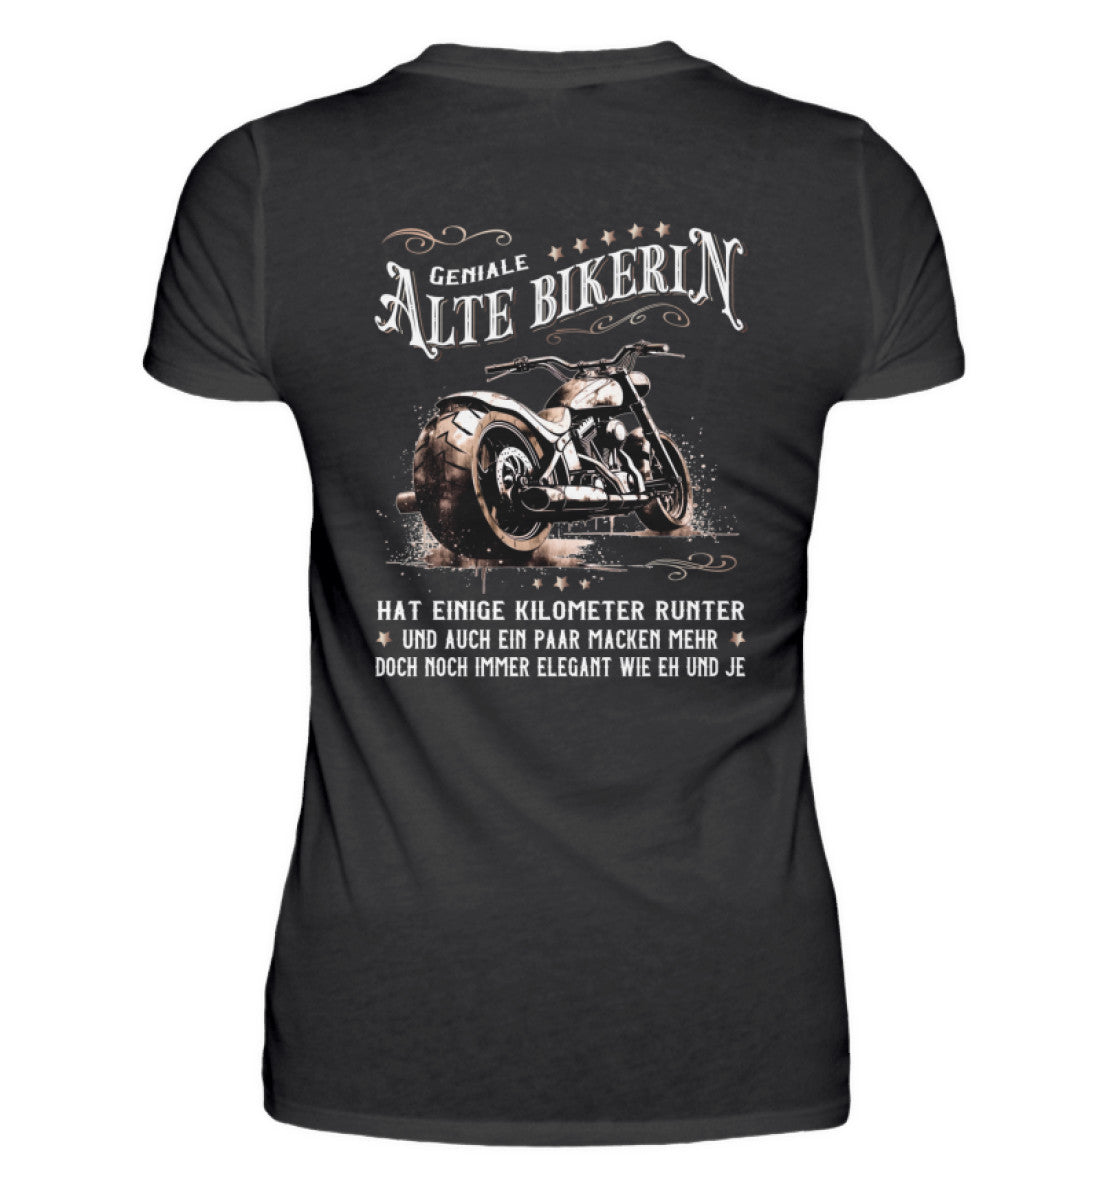 Ein Bikerin T-Shirt für Motorradfahrerinnen von Wingbikers mit dem Aufdruck, Alte Bikerin - Einige Kilometer Runter - Doch elegant wie eh und je - mit Back Print, in schwarz.